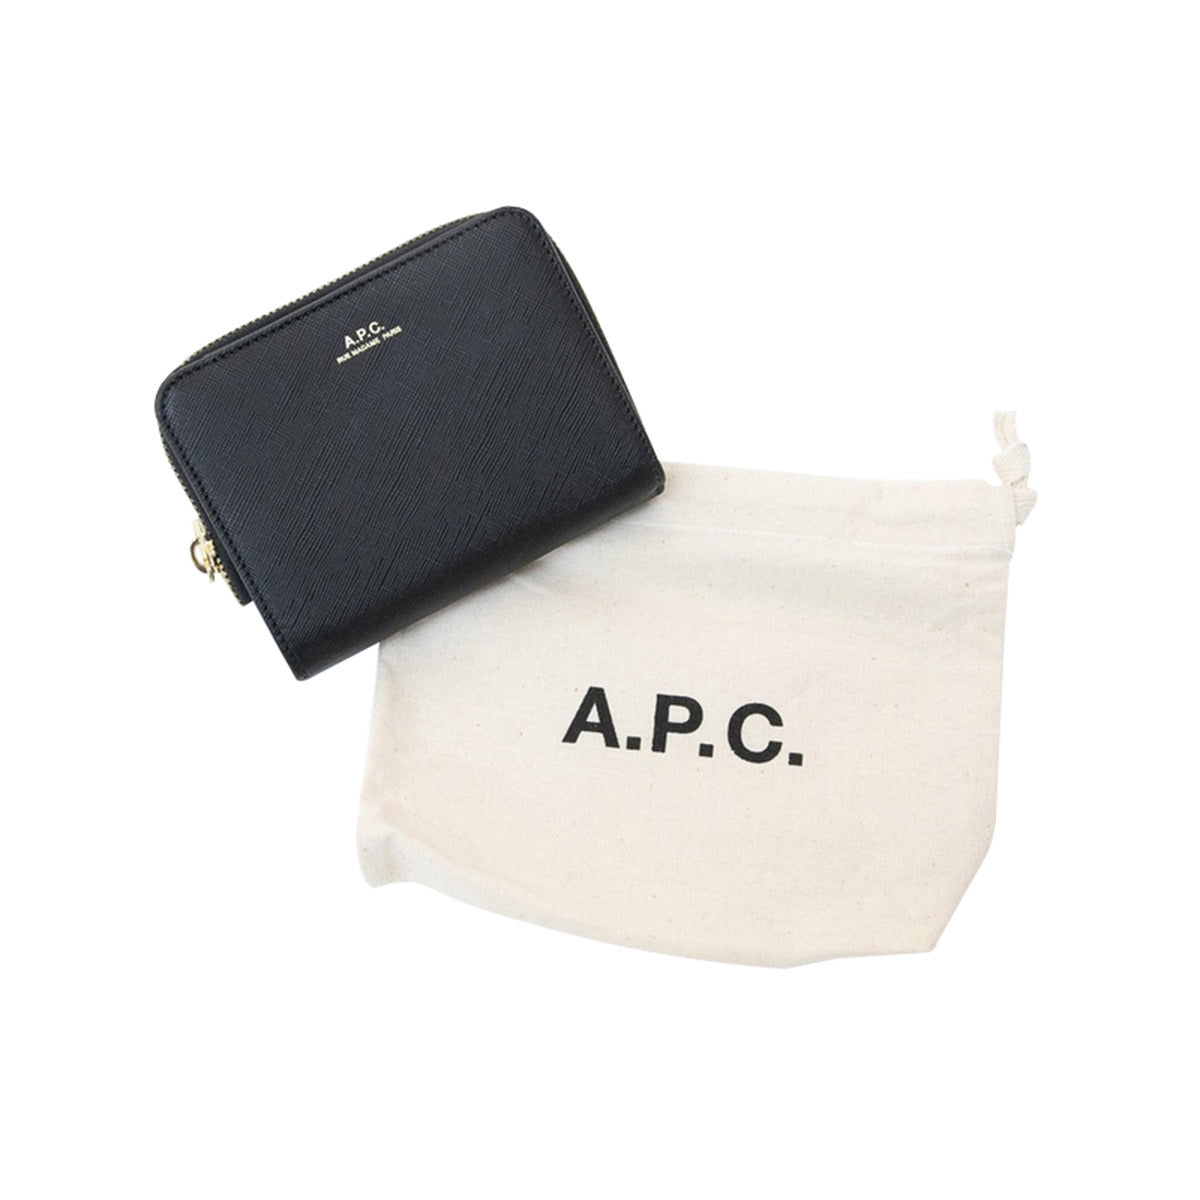 アーペーセー A.P.C. 財布 二つ折り財布 折りたたみ財布 F63029 PXBJQ